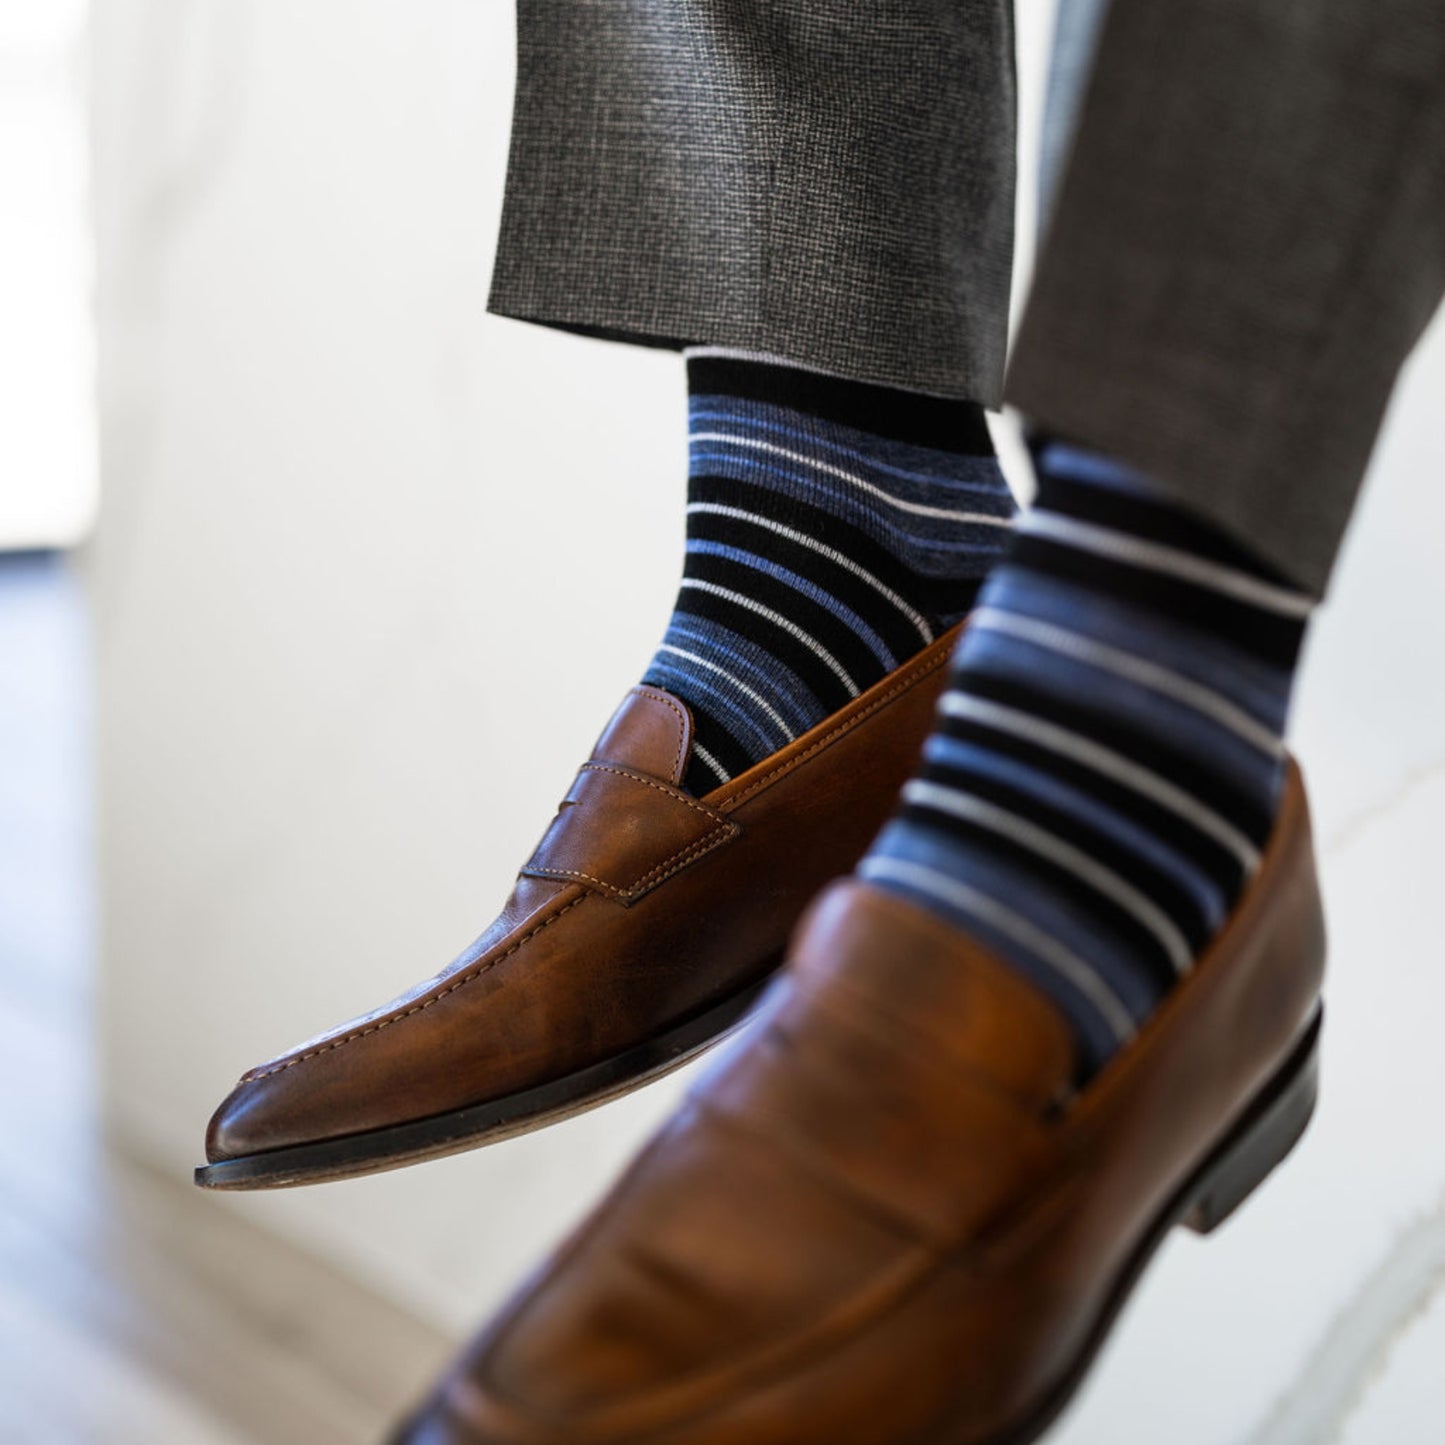 Blue, Black, and white striped men's dress socks